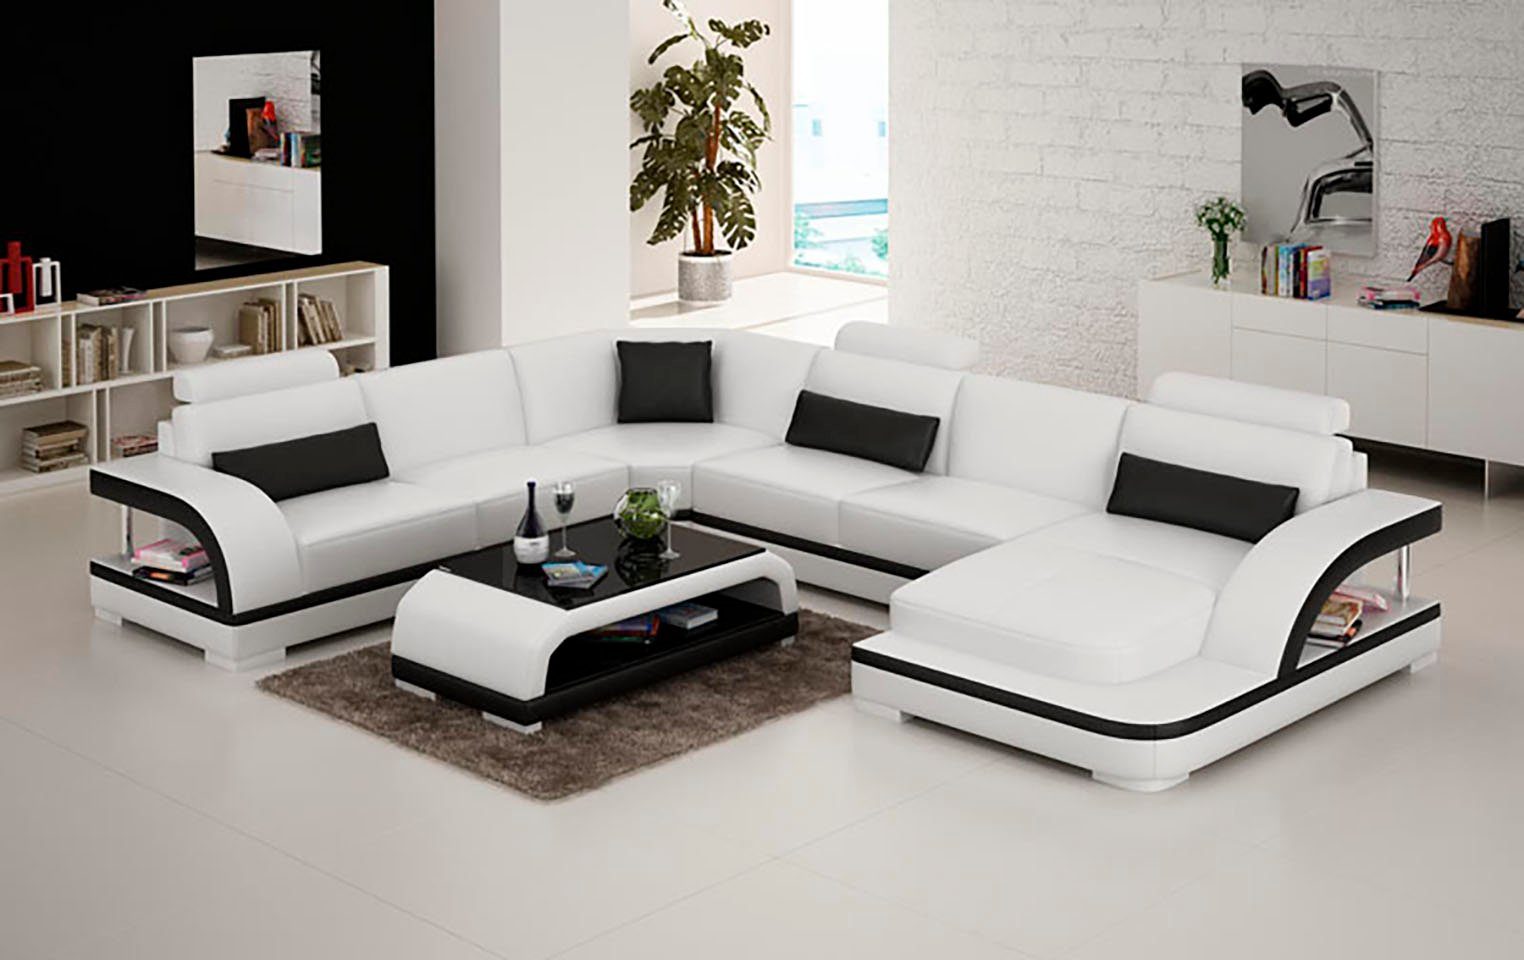 JVmoebel Ecksofa, Leder Eck Sofa Sofas Modern UForm Couch Design Wohnlandschaft Eck